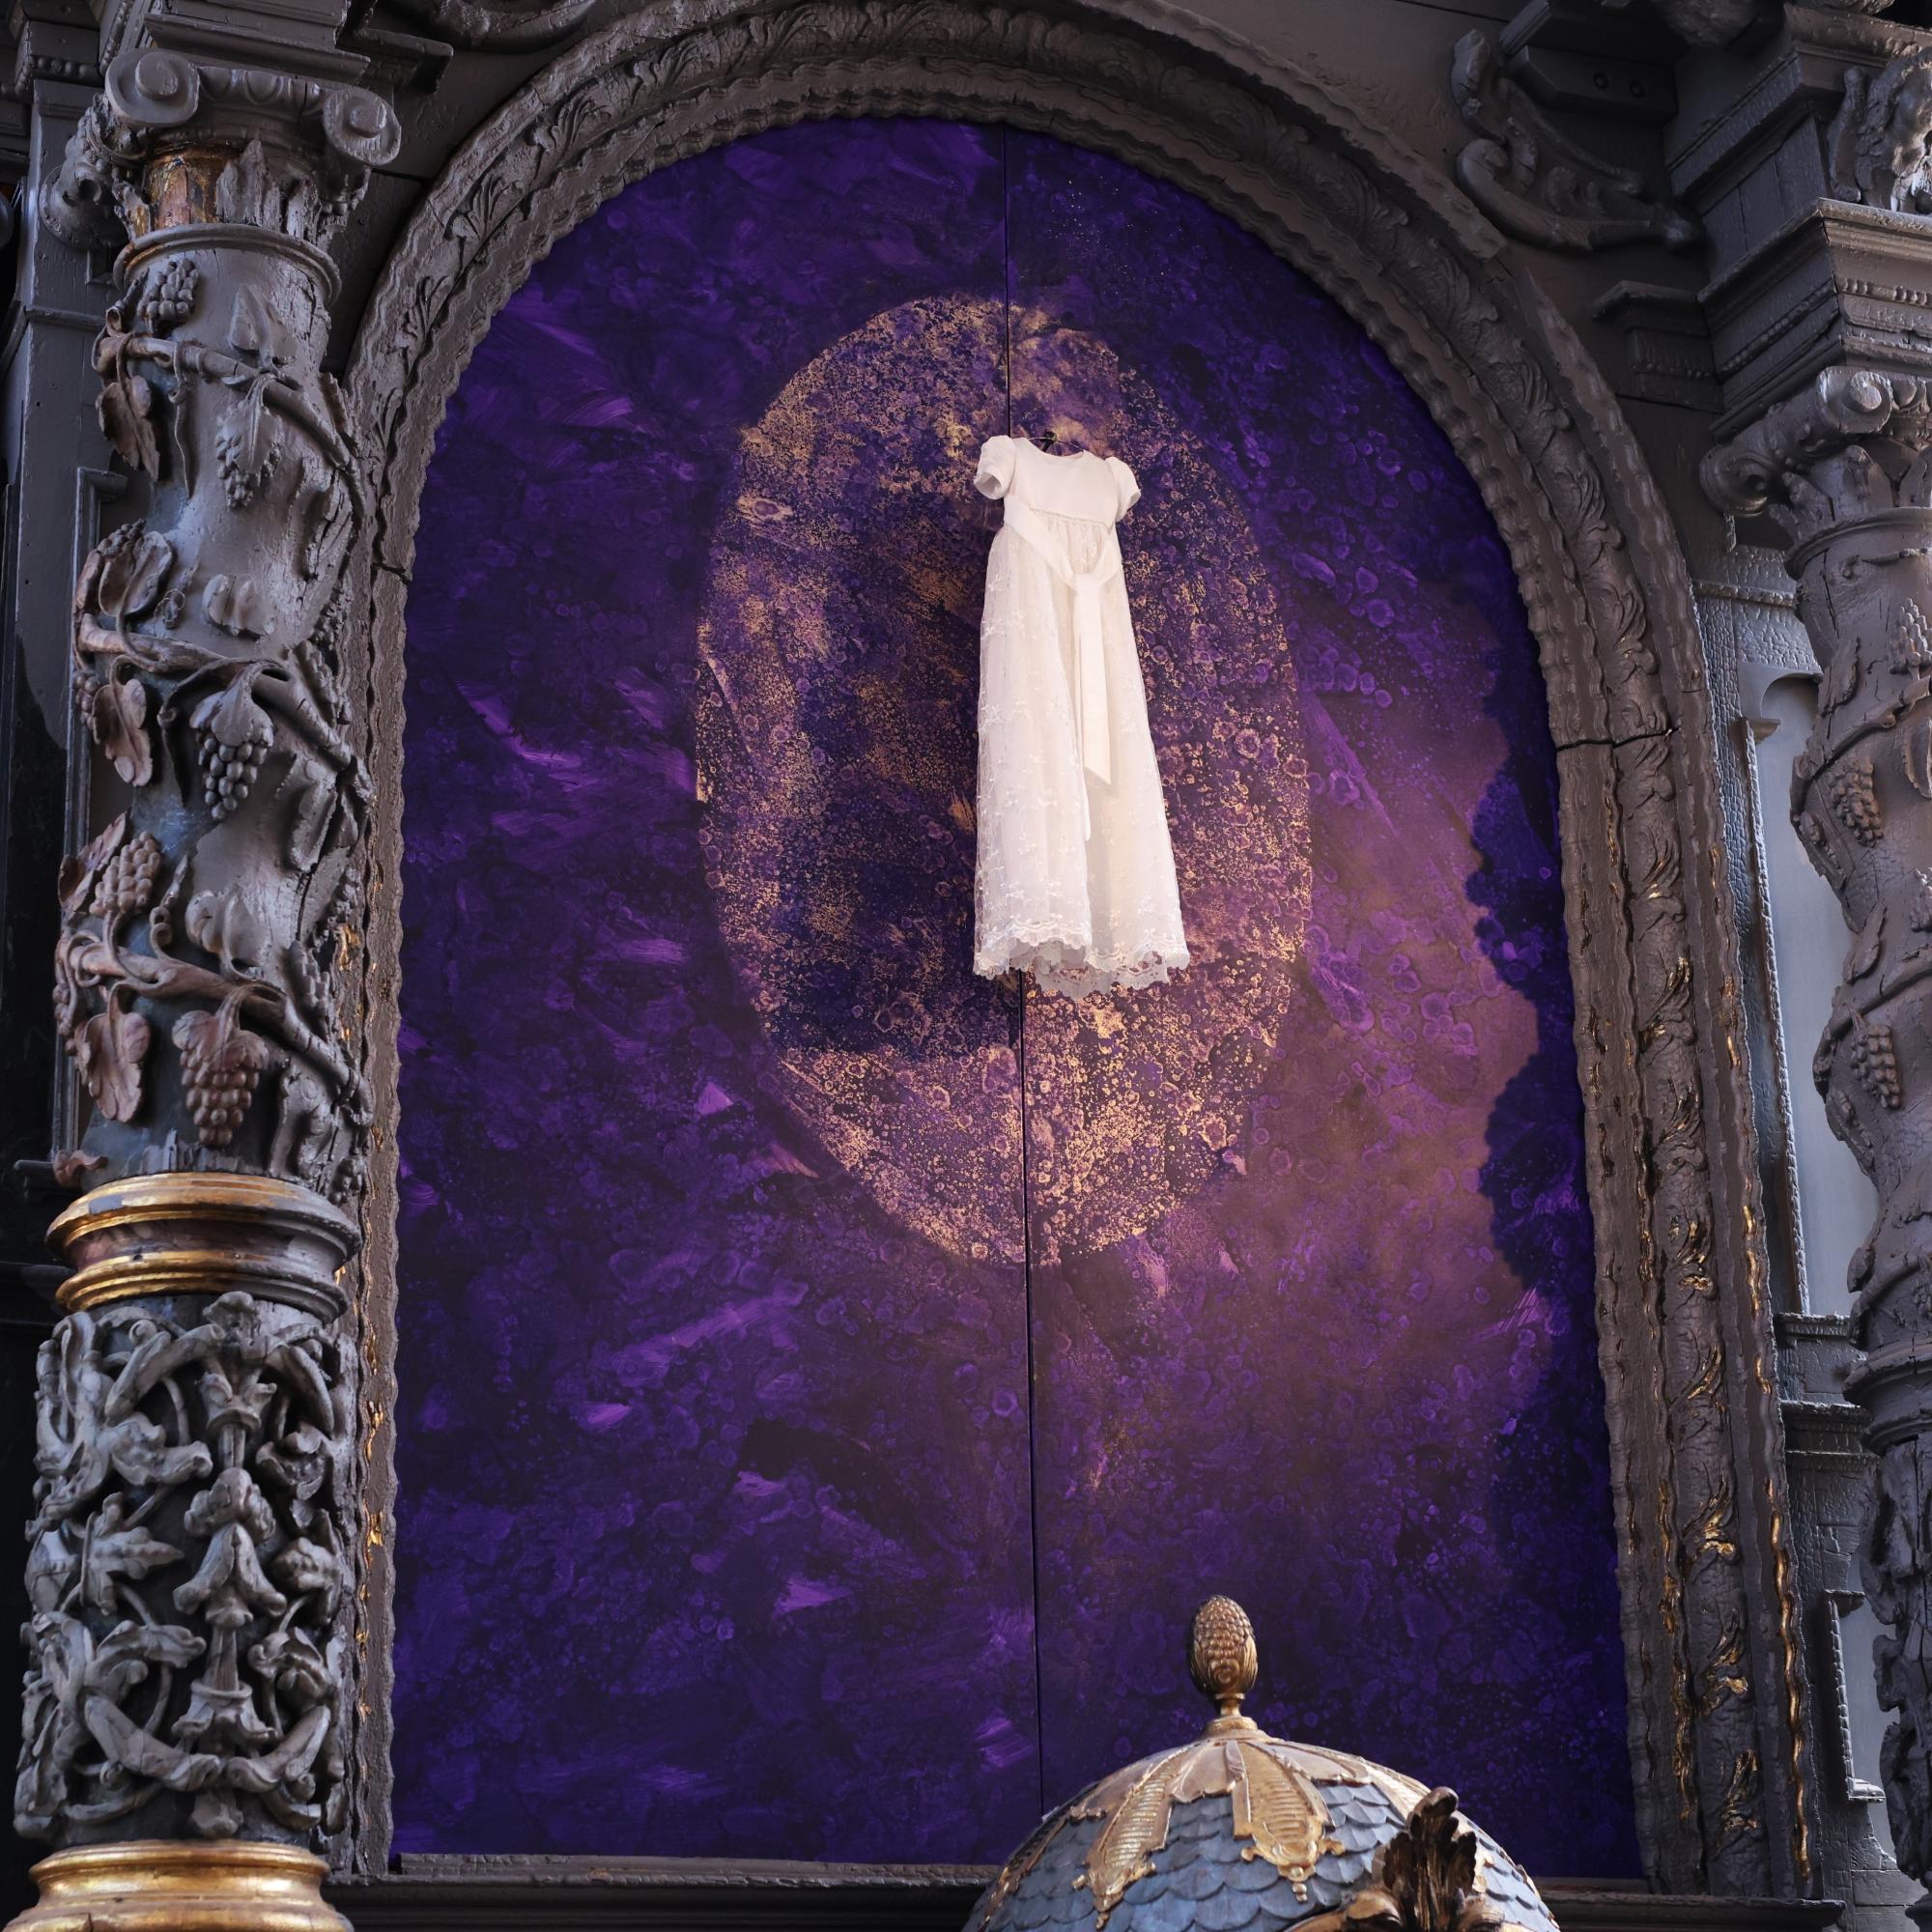 Uwe Appolds erstes Bild, das nun enthüllt wurde, widmet sich dem Thema der Taufe. Zum Glaubensweg gehört die Vorbereitung und das Fest, symbolisiert mit den Farben Violett und Gold.